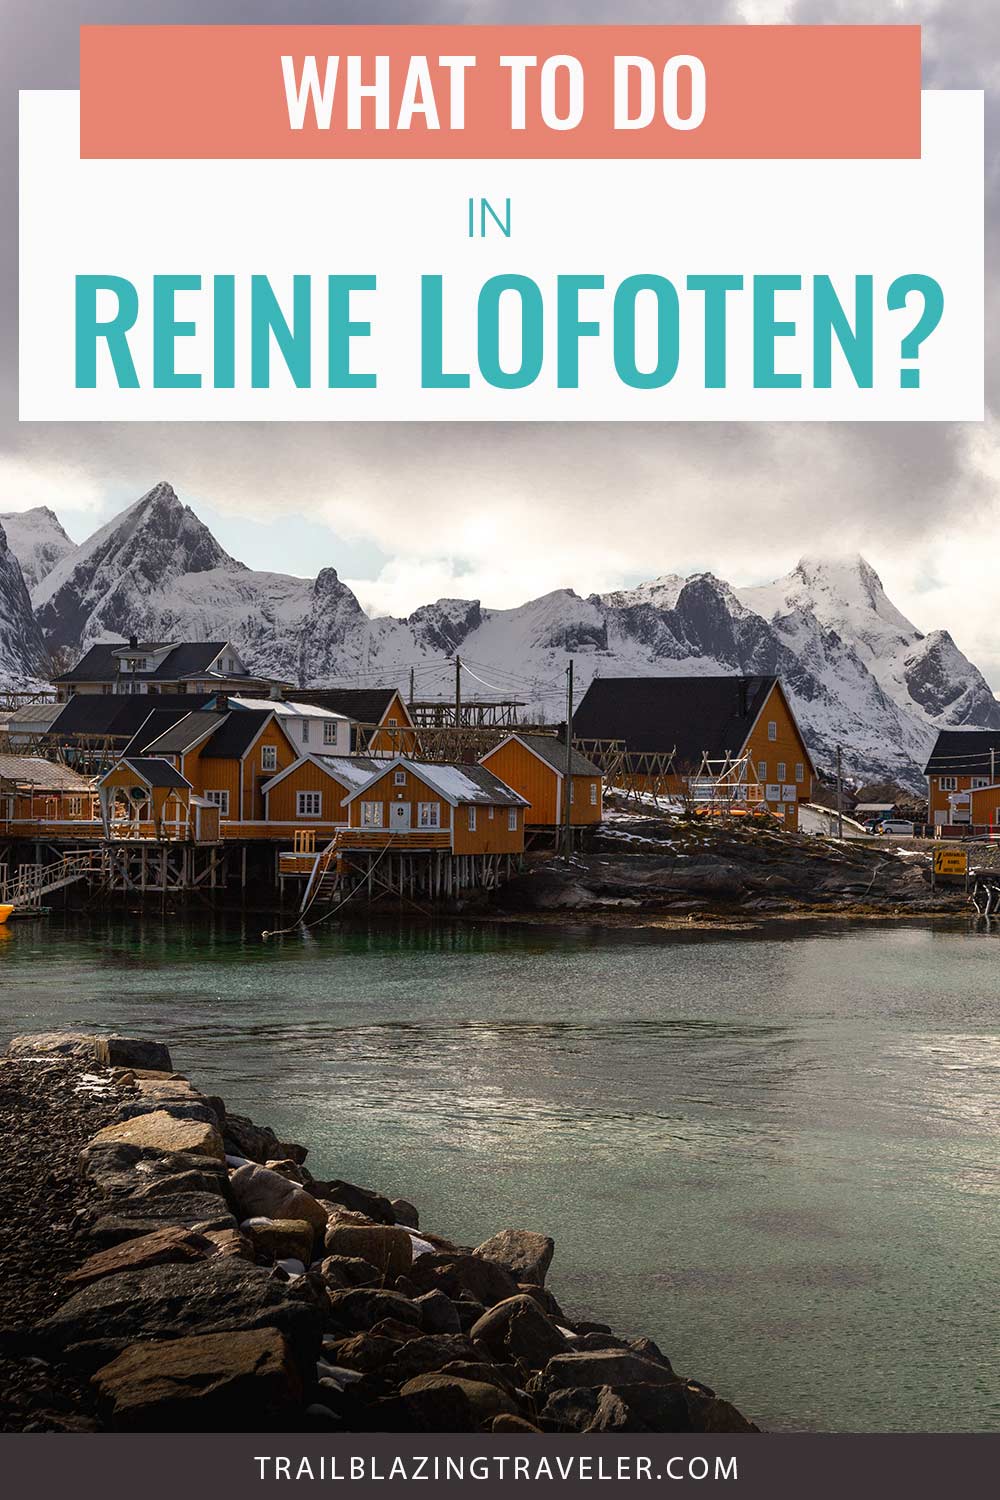 What To Do In Reine Lofoten?